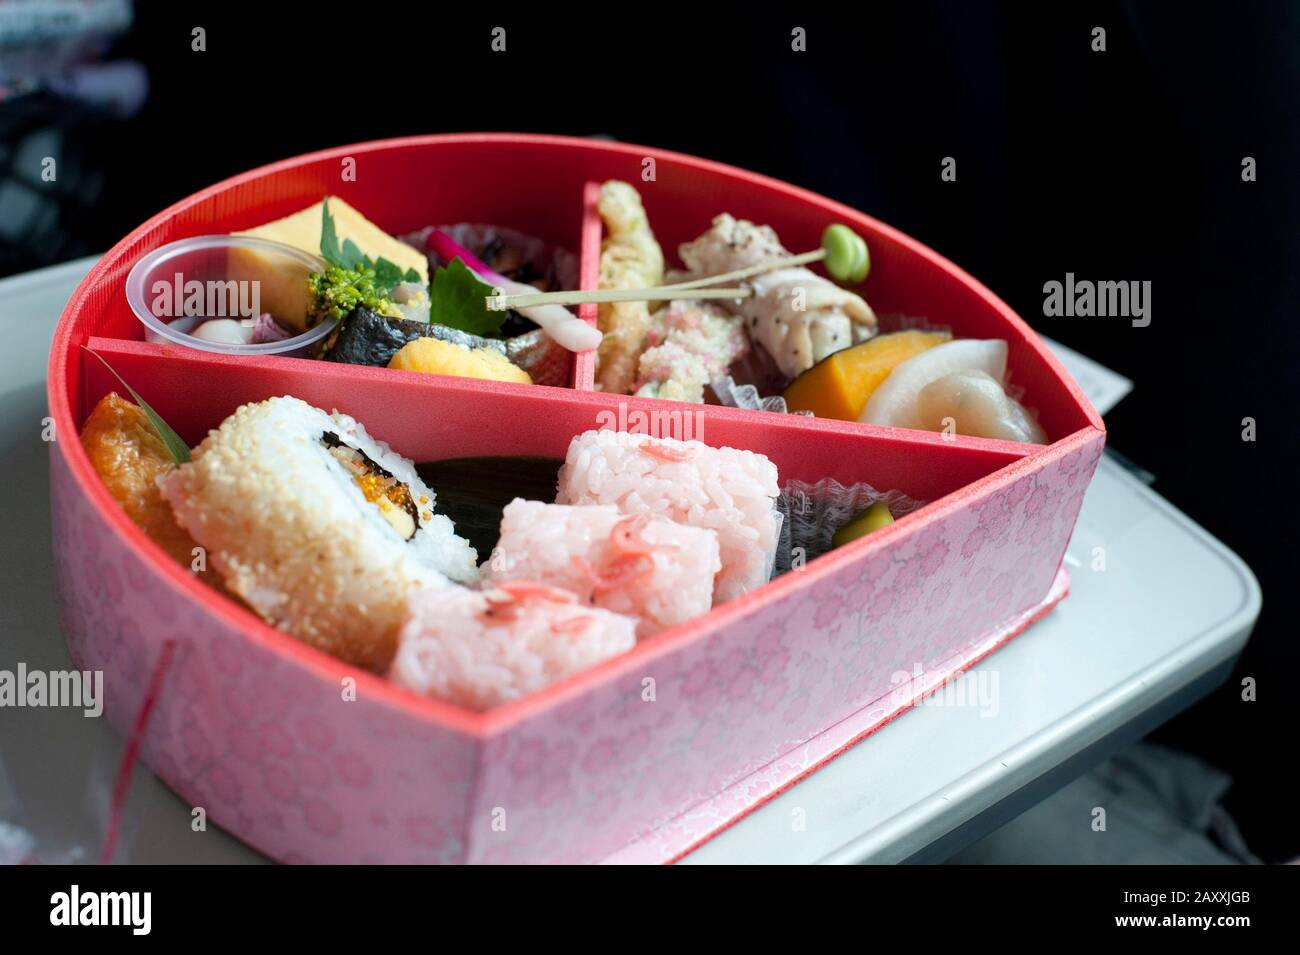 Servizio di cibo all'interno di una scatola bento, un contenitore laccato  con divisioni interne per ospitare un pasto giapponese tradizionale  completo Foto stock - Alamy